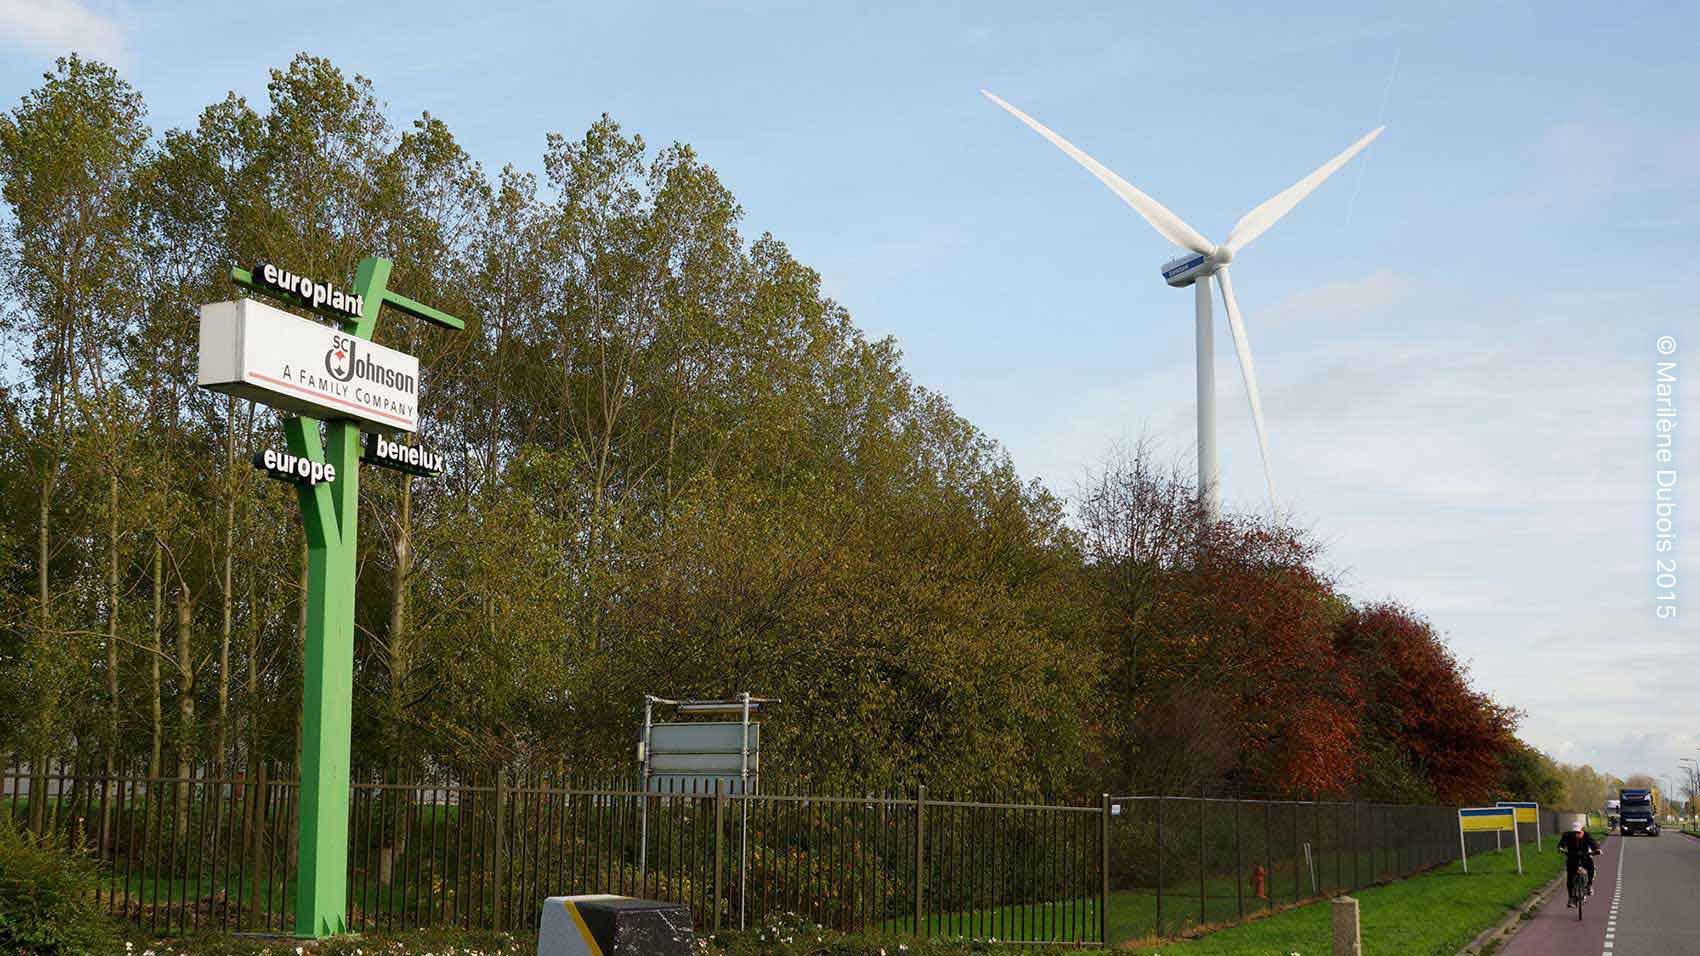 SC Johnson çevresel sorumluluğunun gereklerini daha da fazla yerine getirmek için Europlant’a rüzgar türbinleri kuruyor